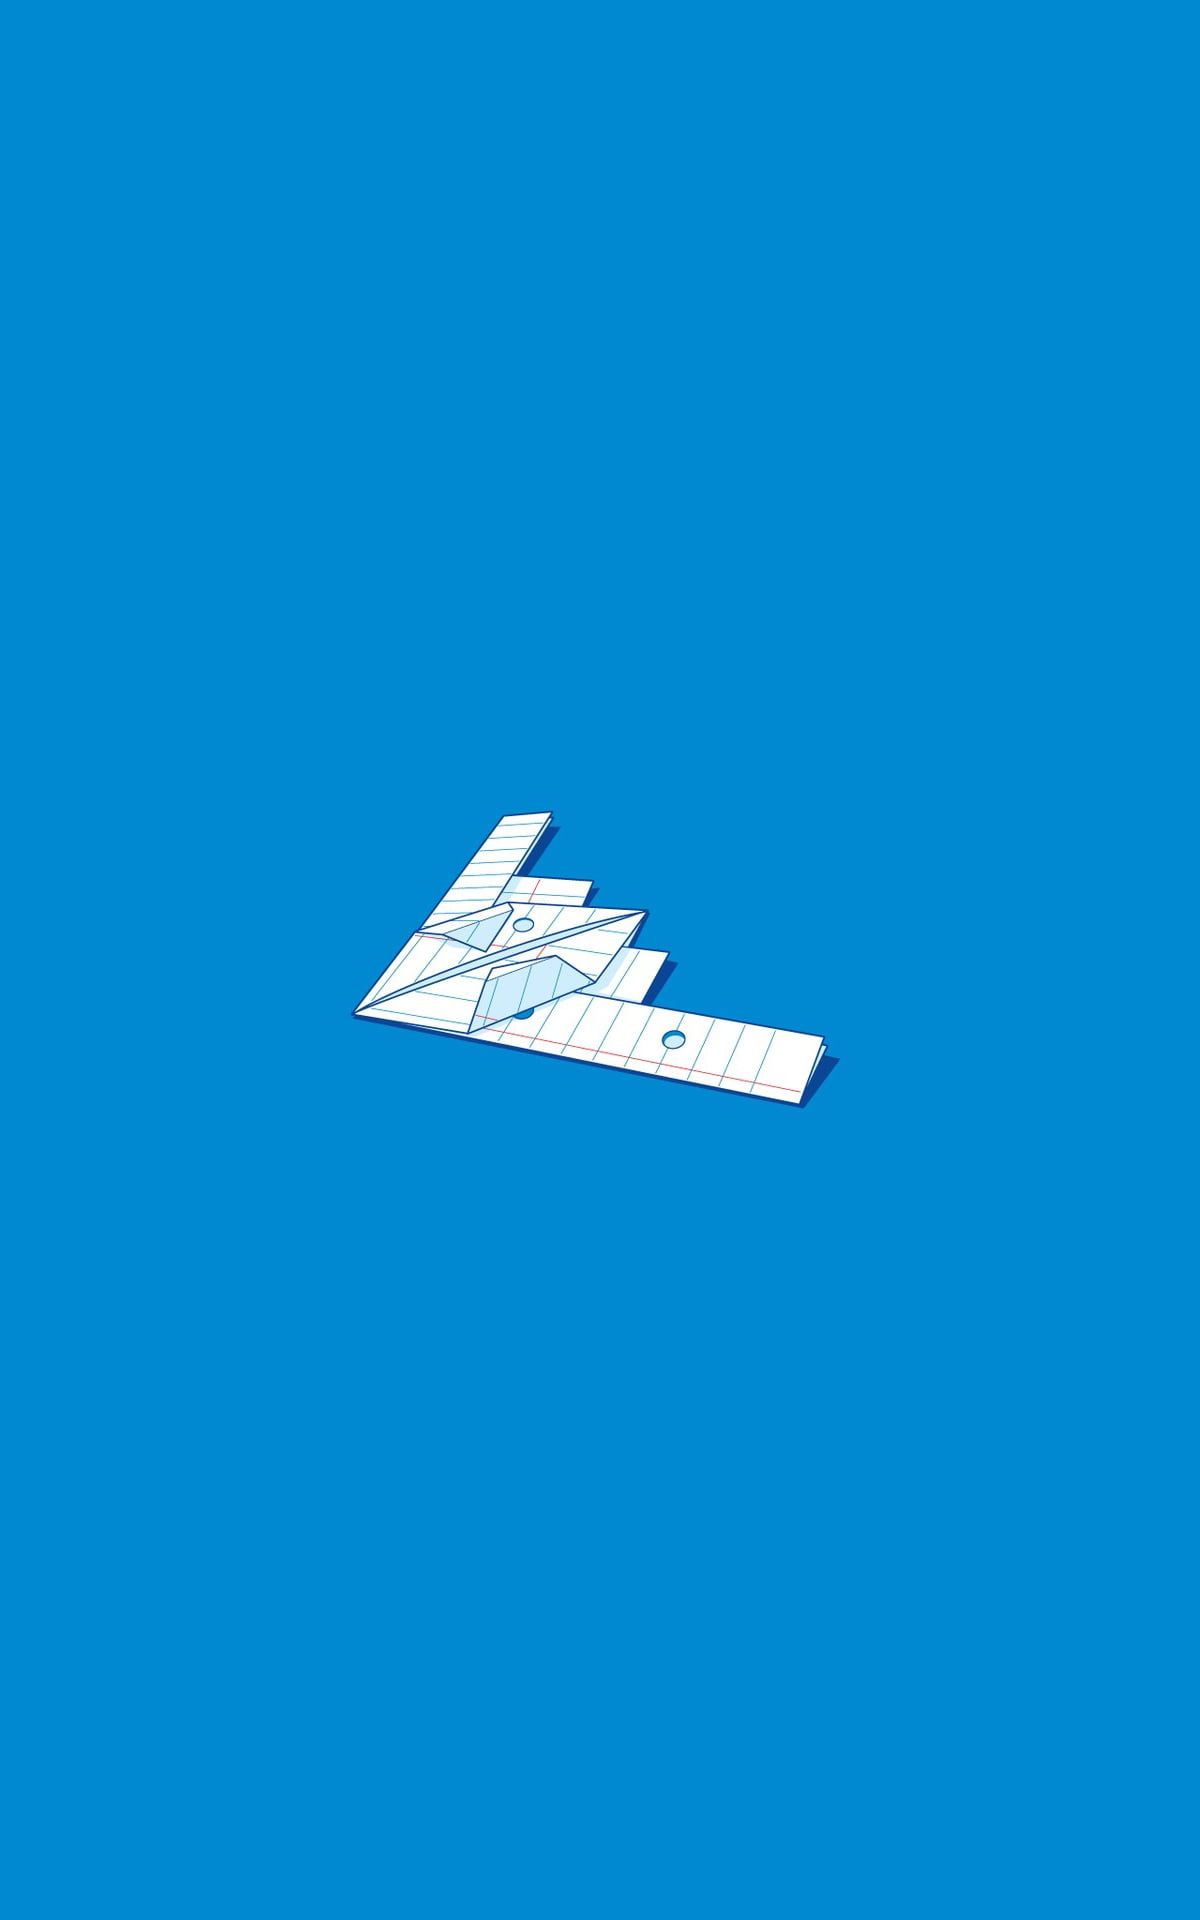 عکس هواپیمای کاغذی سفید رنگ روی صفحه آبی برای پروفایل هنری